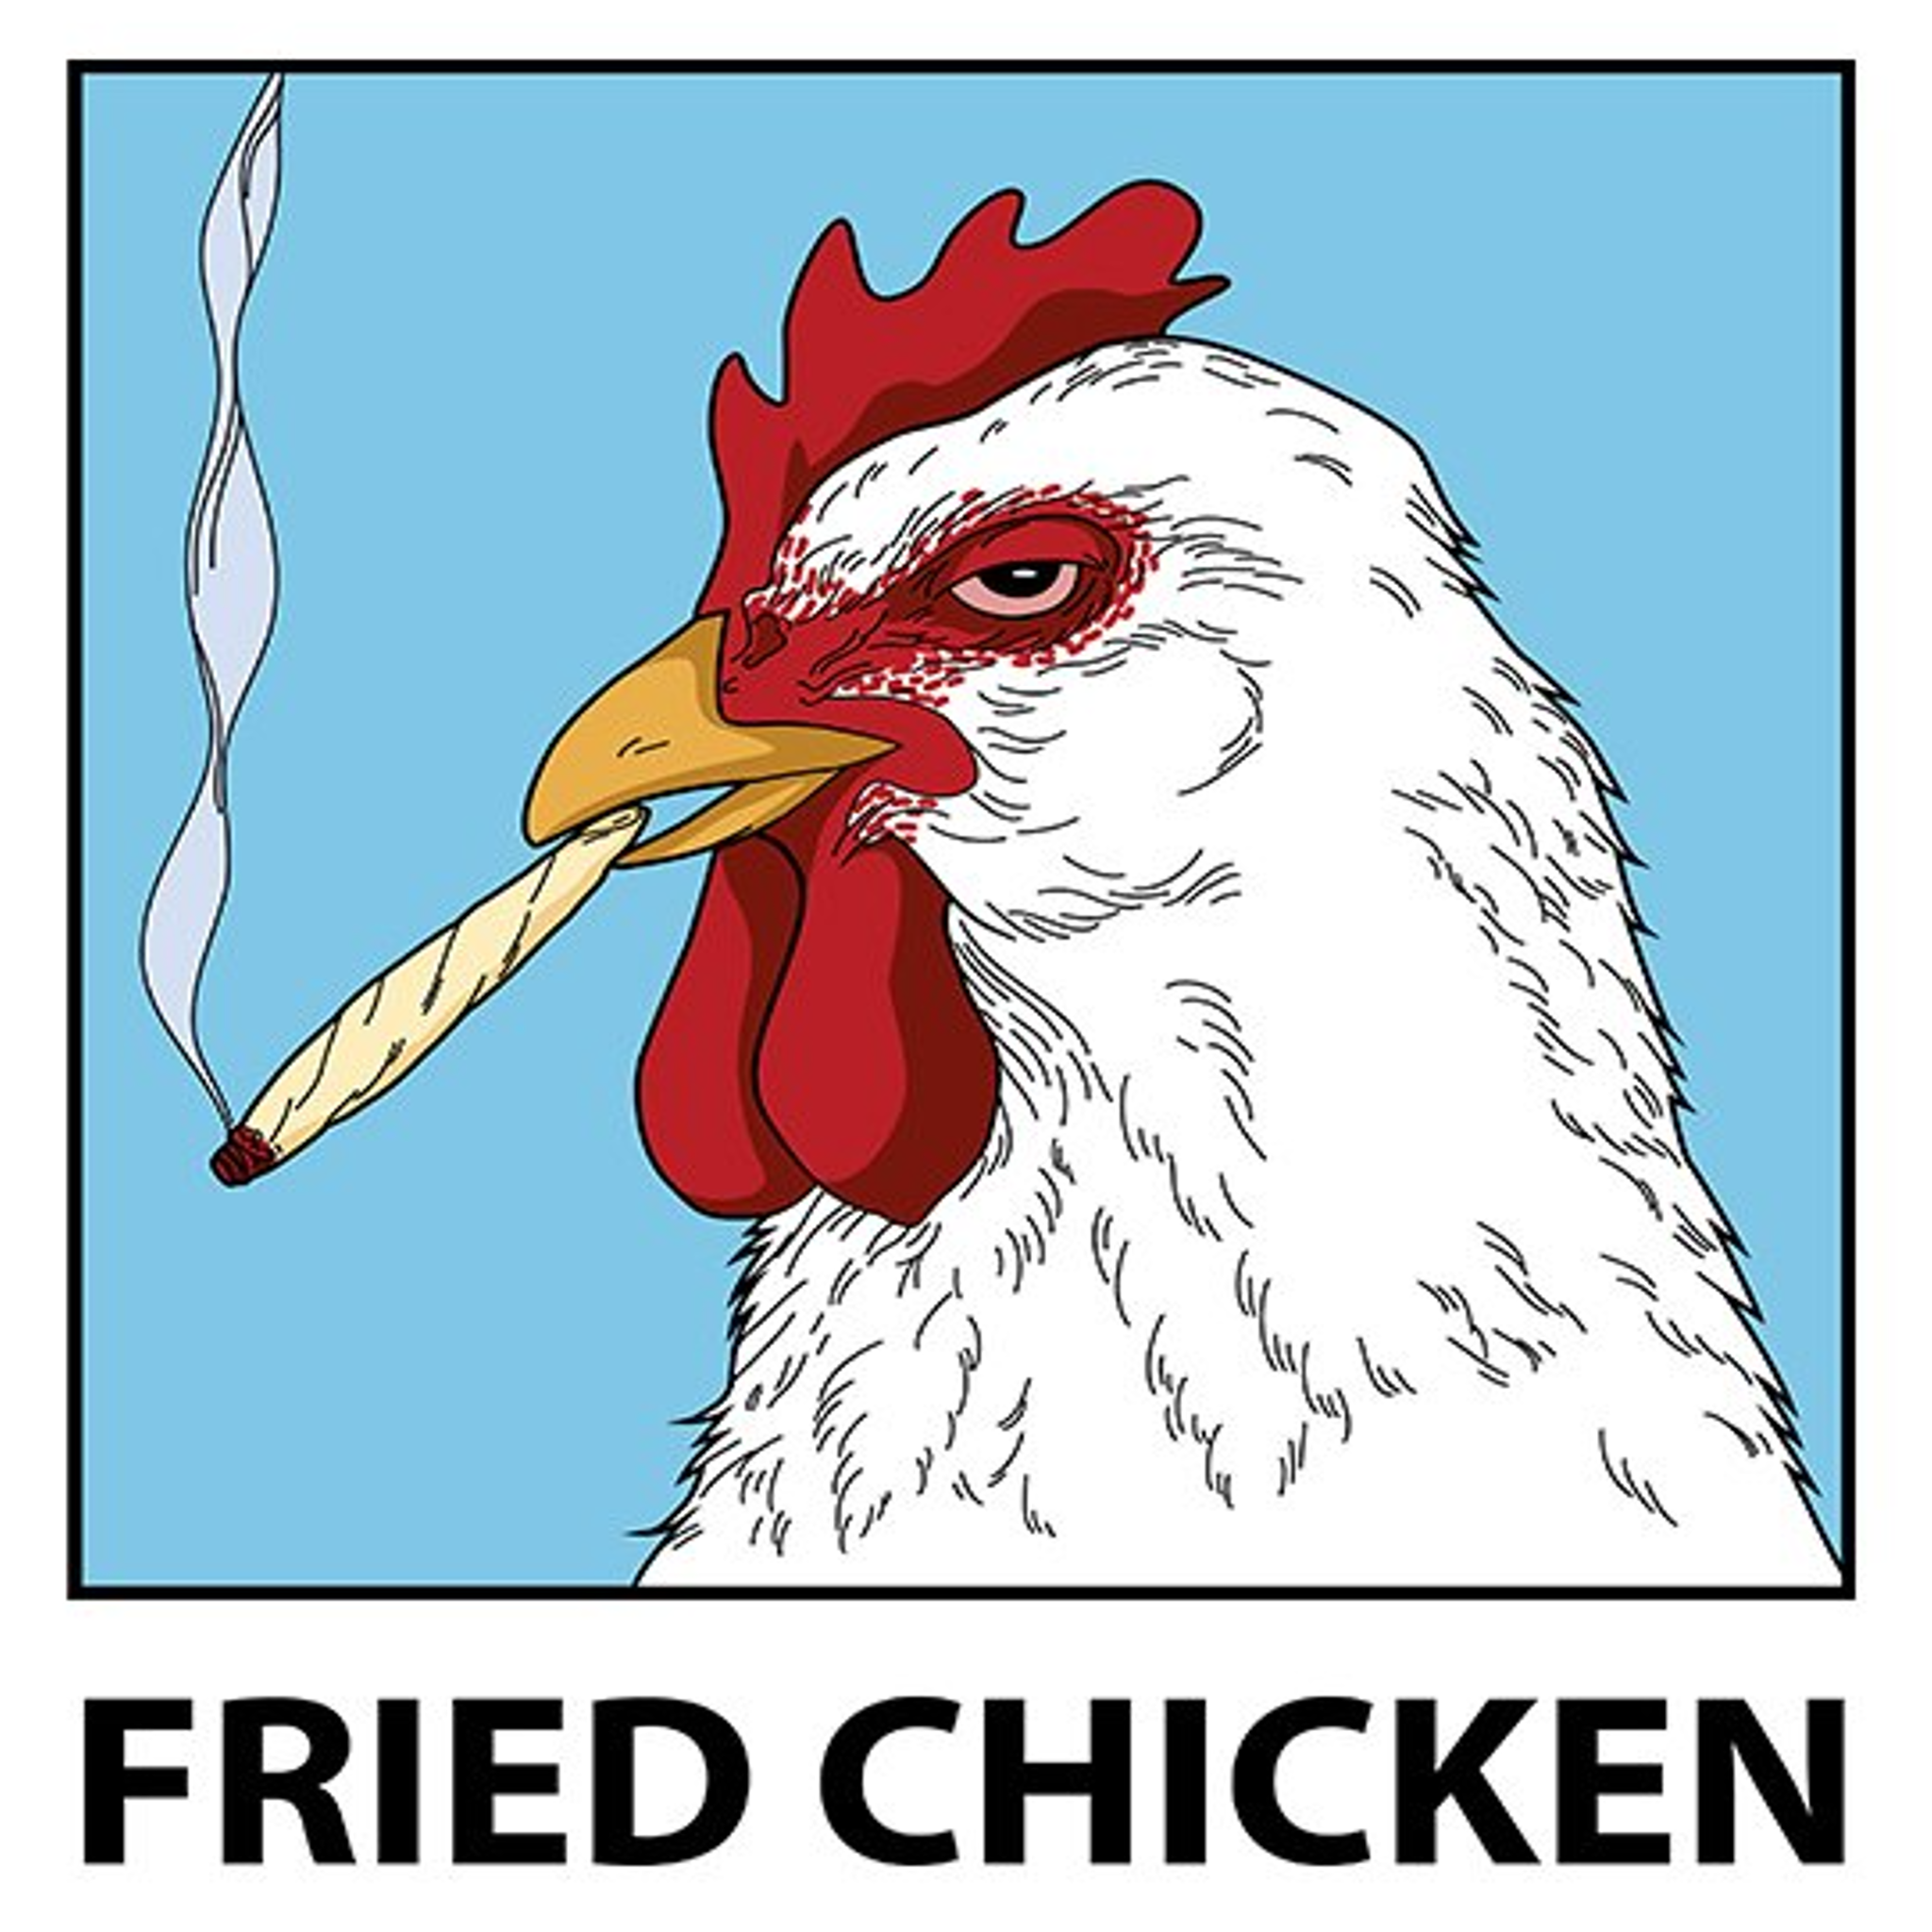 Fried chicken.